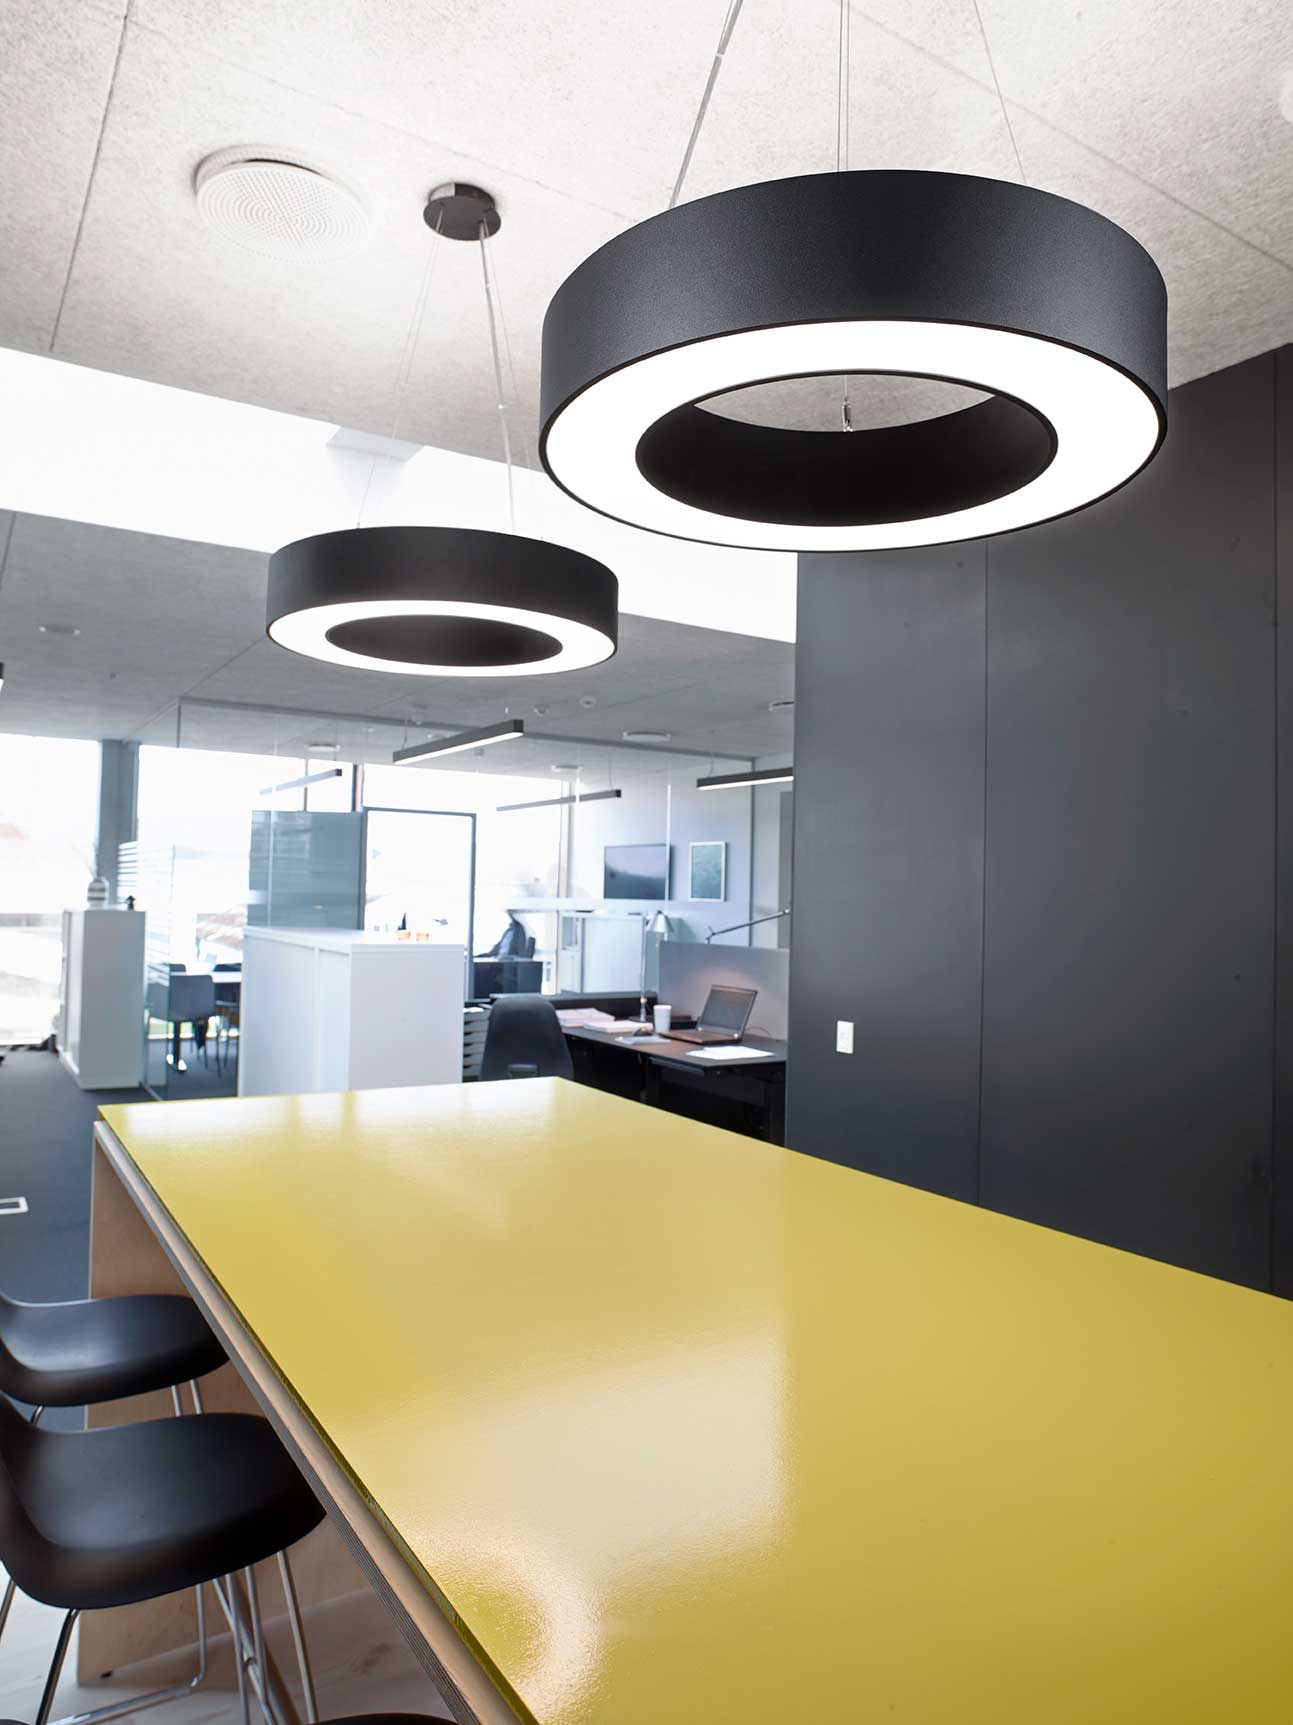 Ringo star pendel lampe nedhængt over gult mødebord i kontormiljø - Luminex